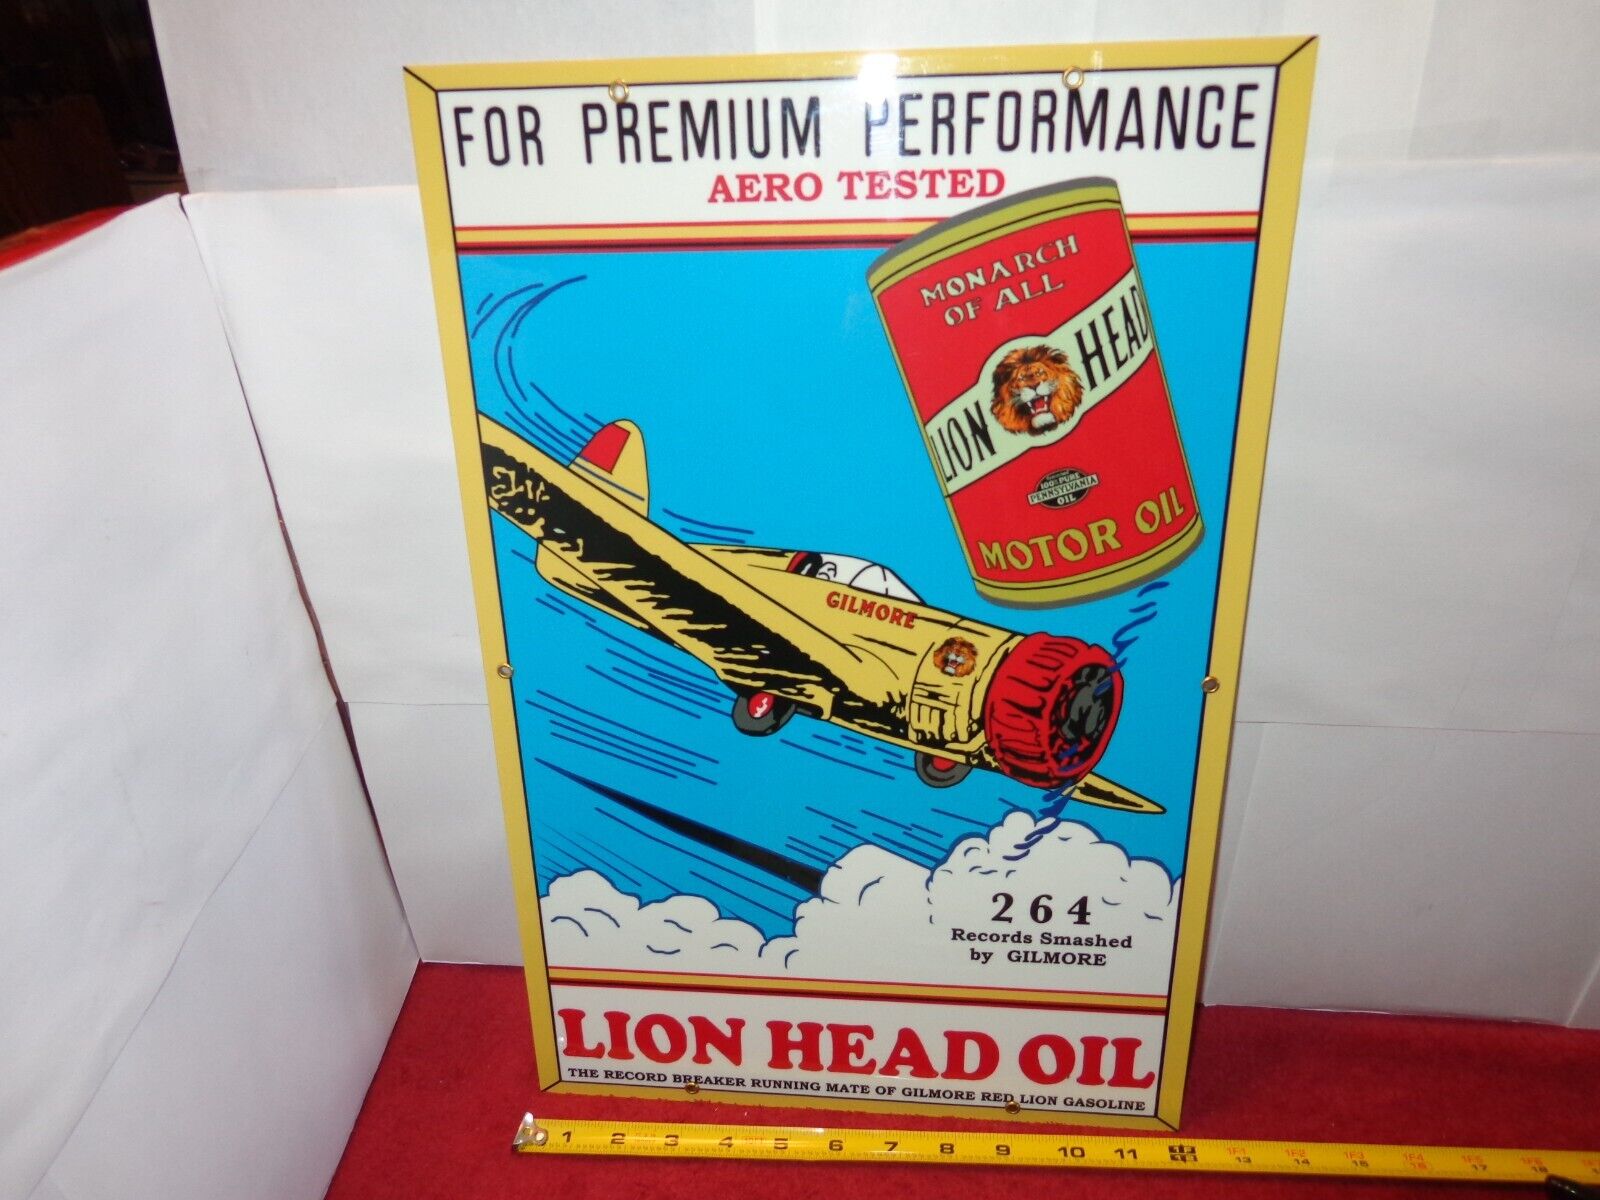 12 x 18 in LION HEAD MOTOR OIL ADVERTISING SIGN HEAVY DIE CUT METAL # 1018 A